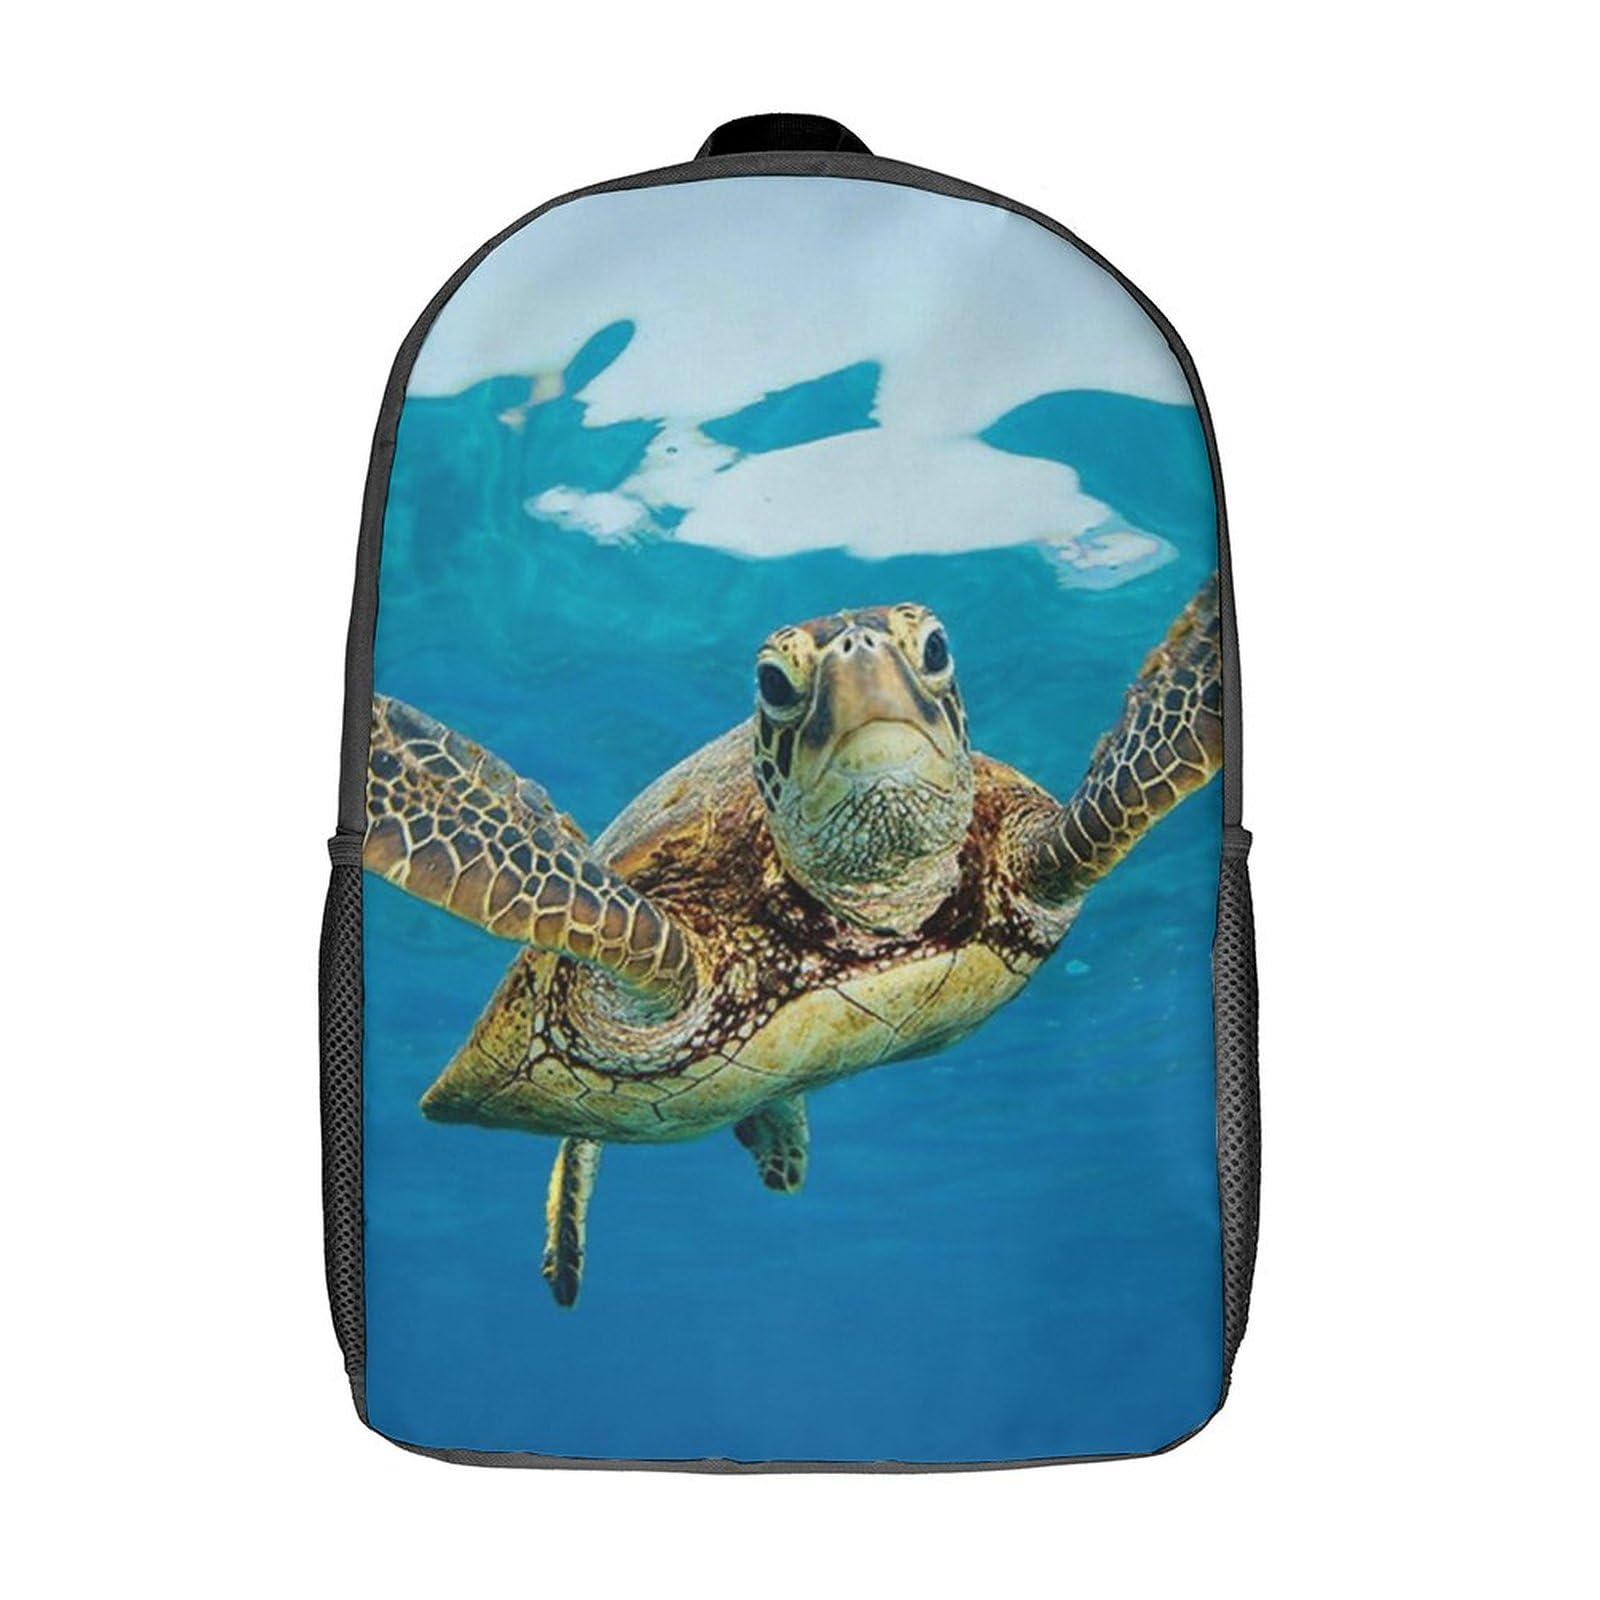 Sea Turtle Travel Backpack Casual 17 Inch Large Daypack Shoulder Bag with Adjustable Shoulder Straps